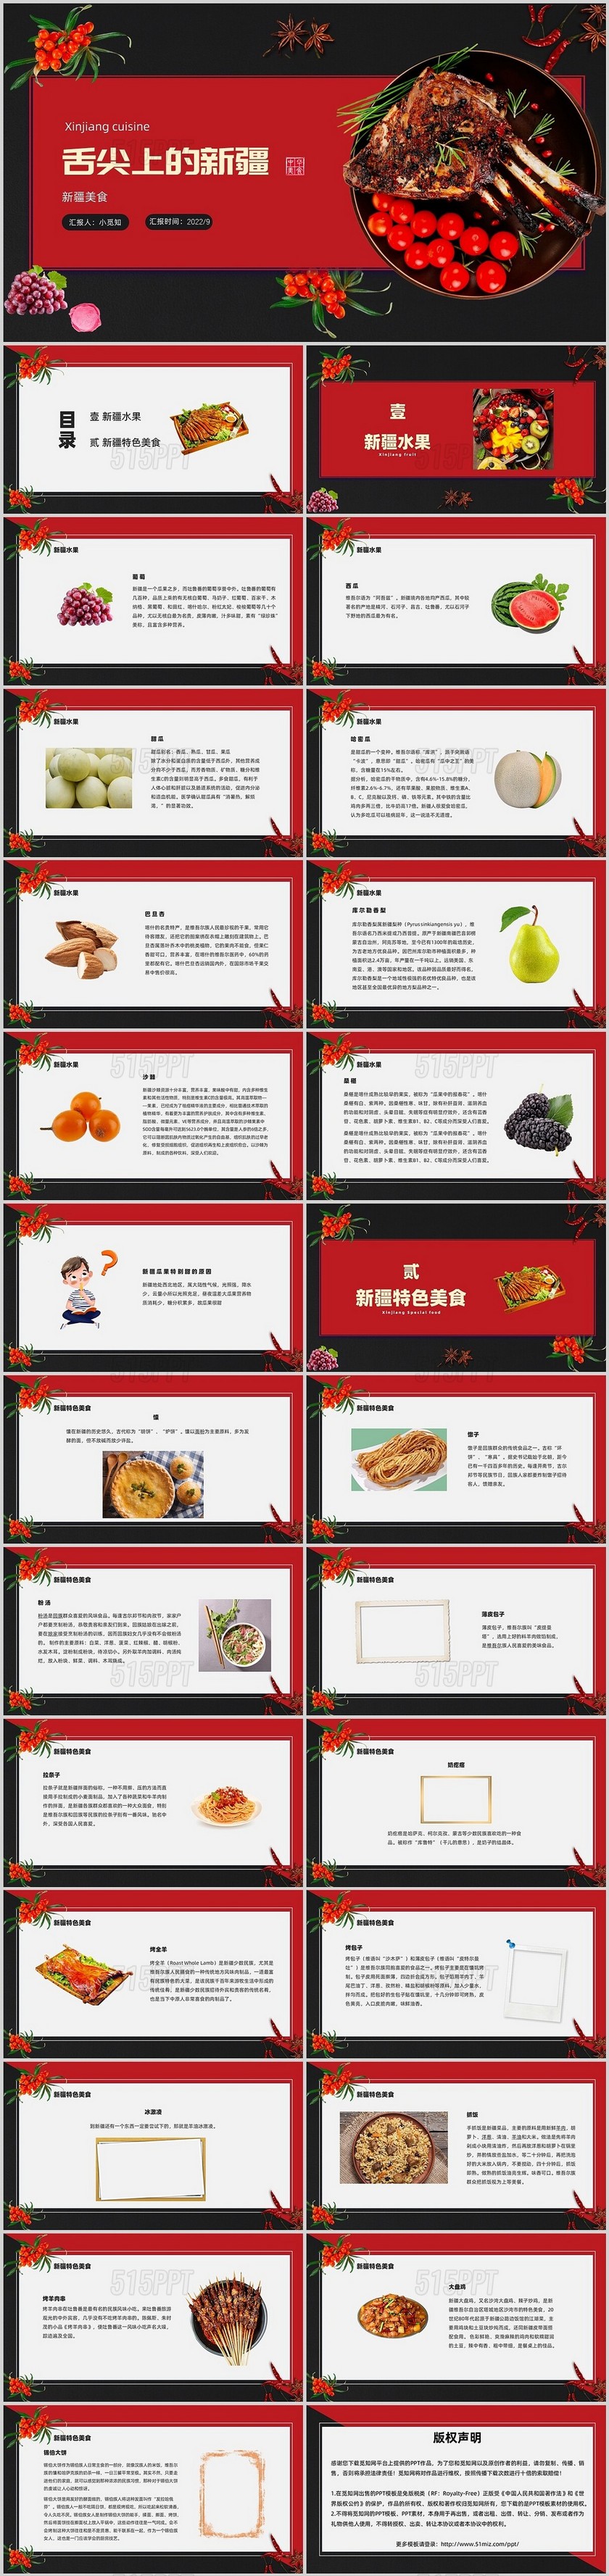 红黑实拍简约商务新疆美食PPT模板